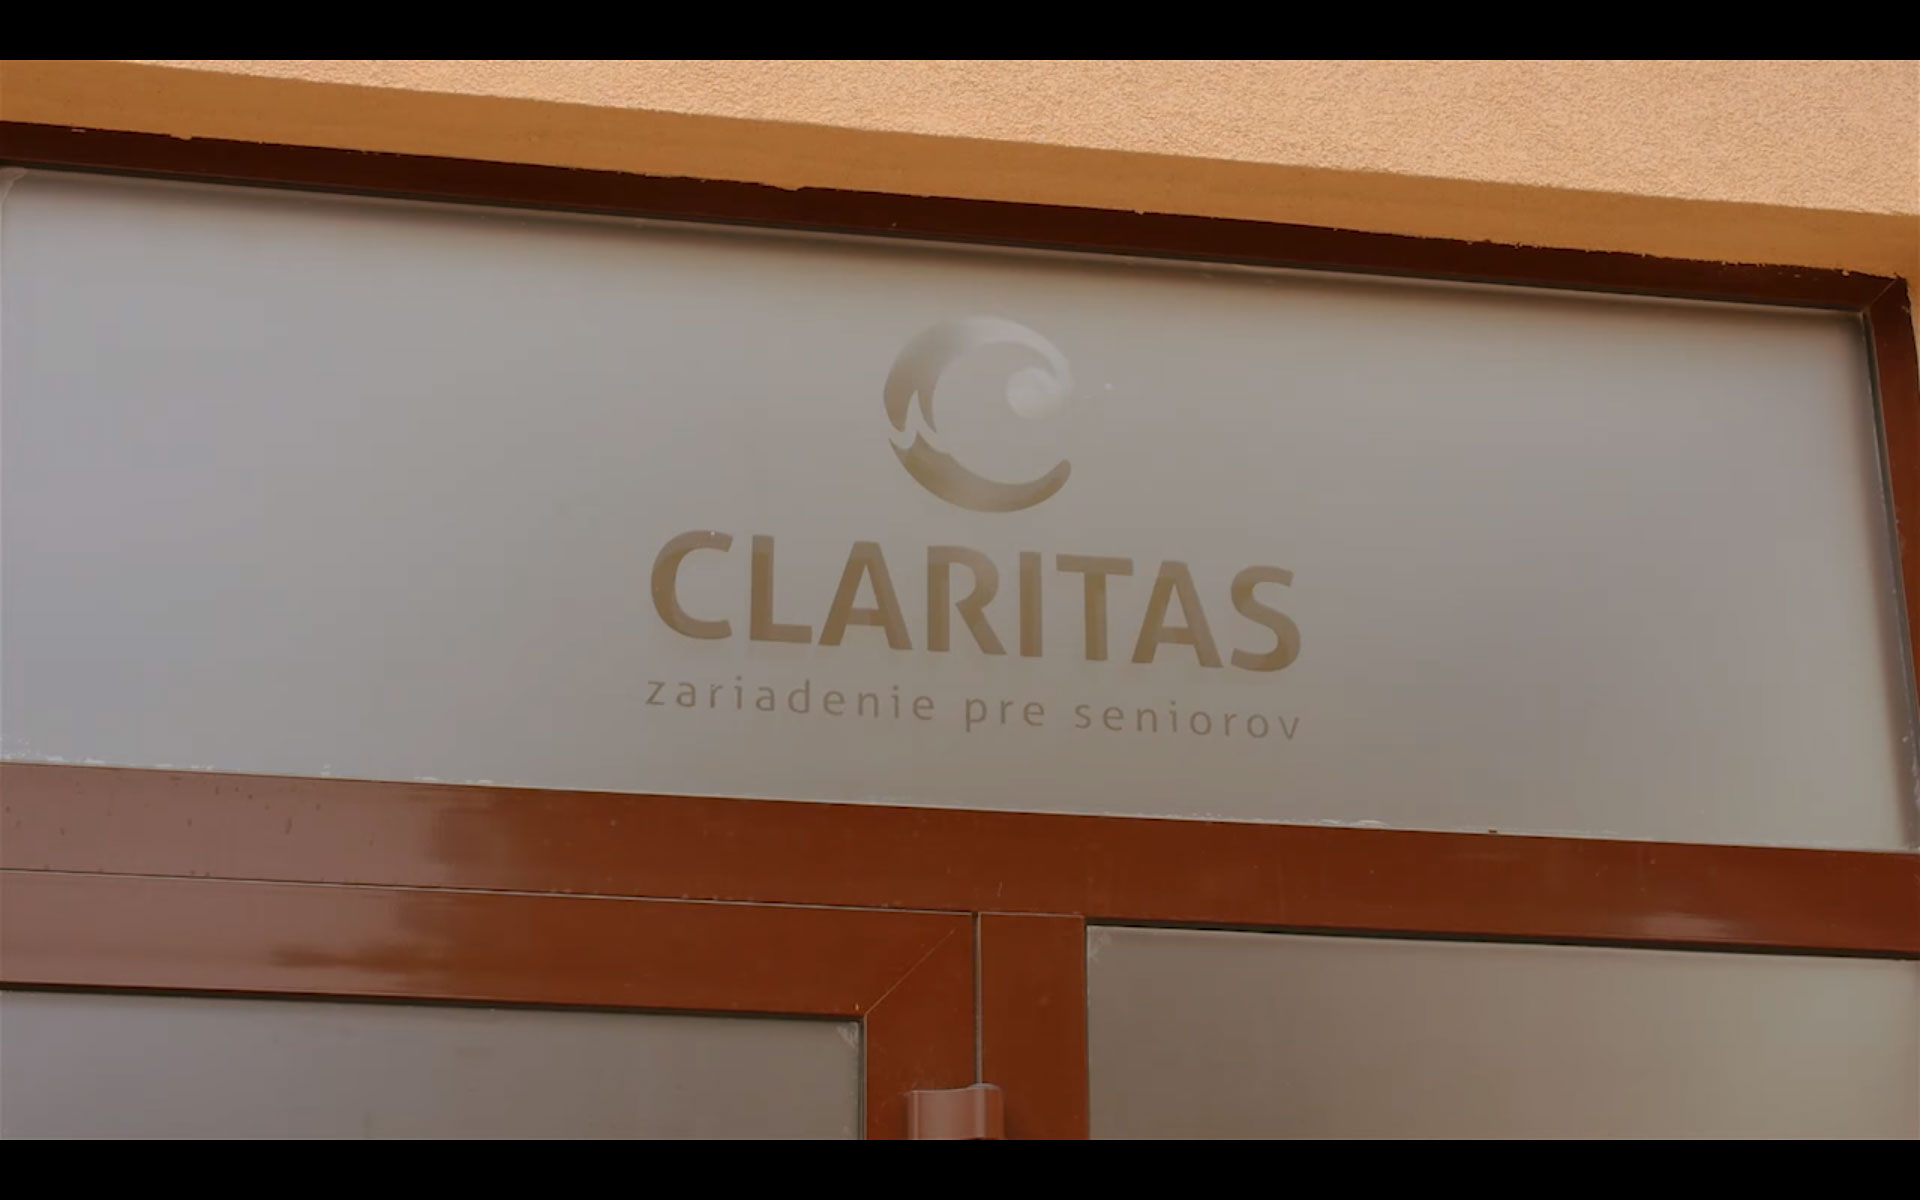 Claritas - Zariadenie pre seniorov